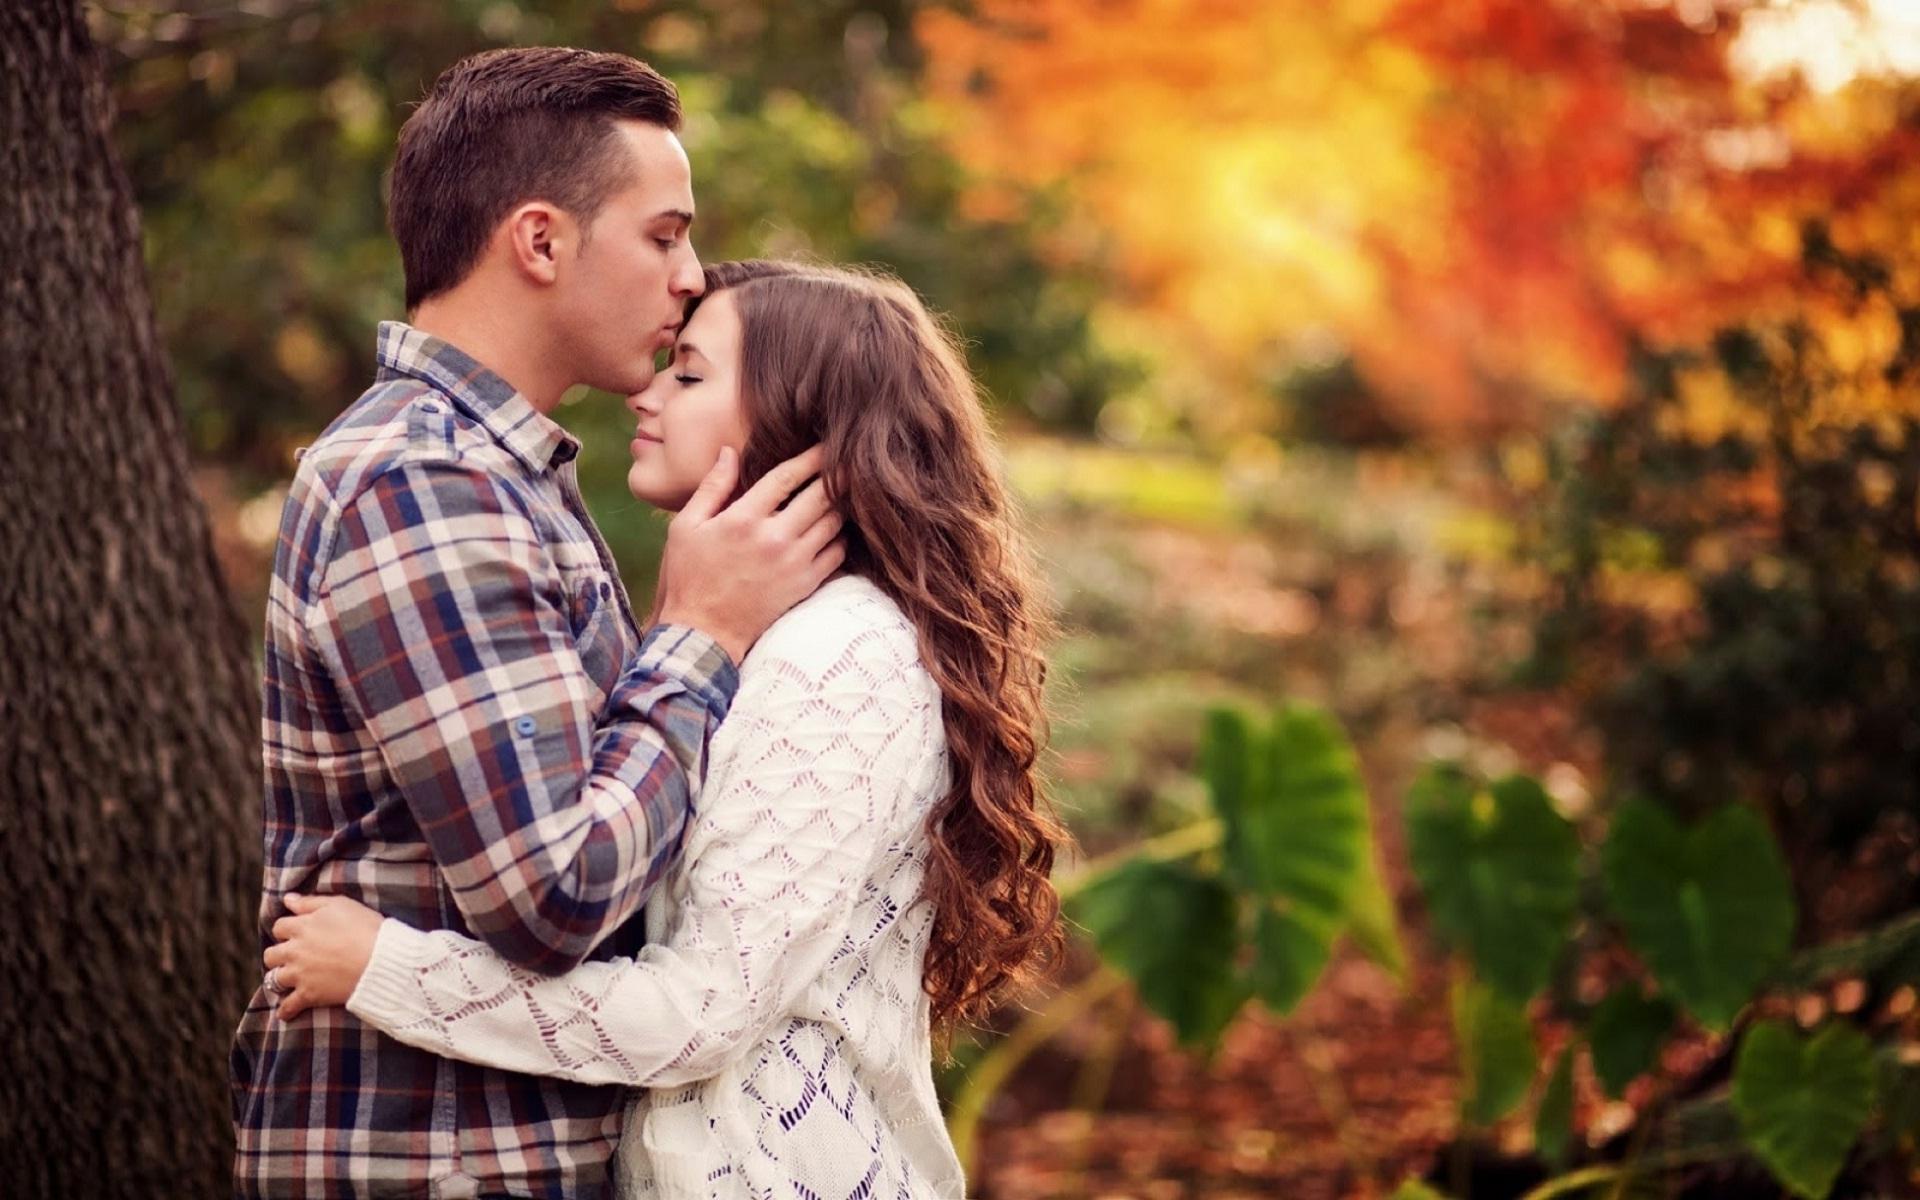 Romance love story. Поцелуй в лоб. Осенняя фотосессия влюбленных. Влюбленные романтика. Молодая пара.